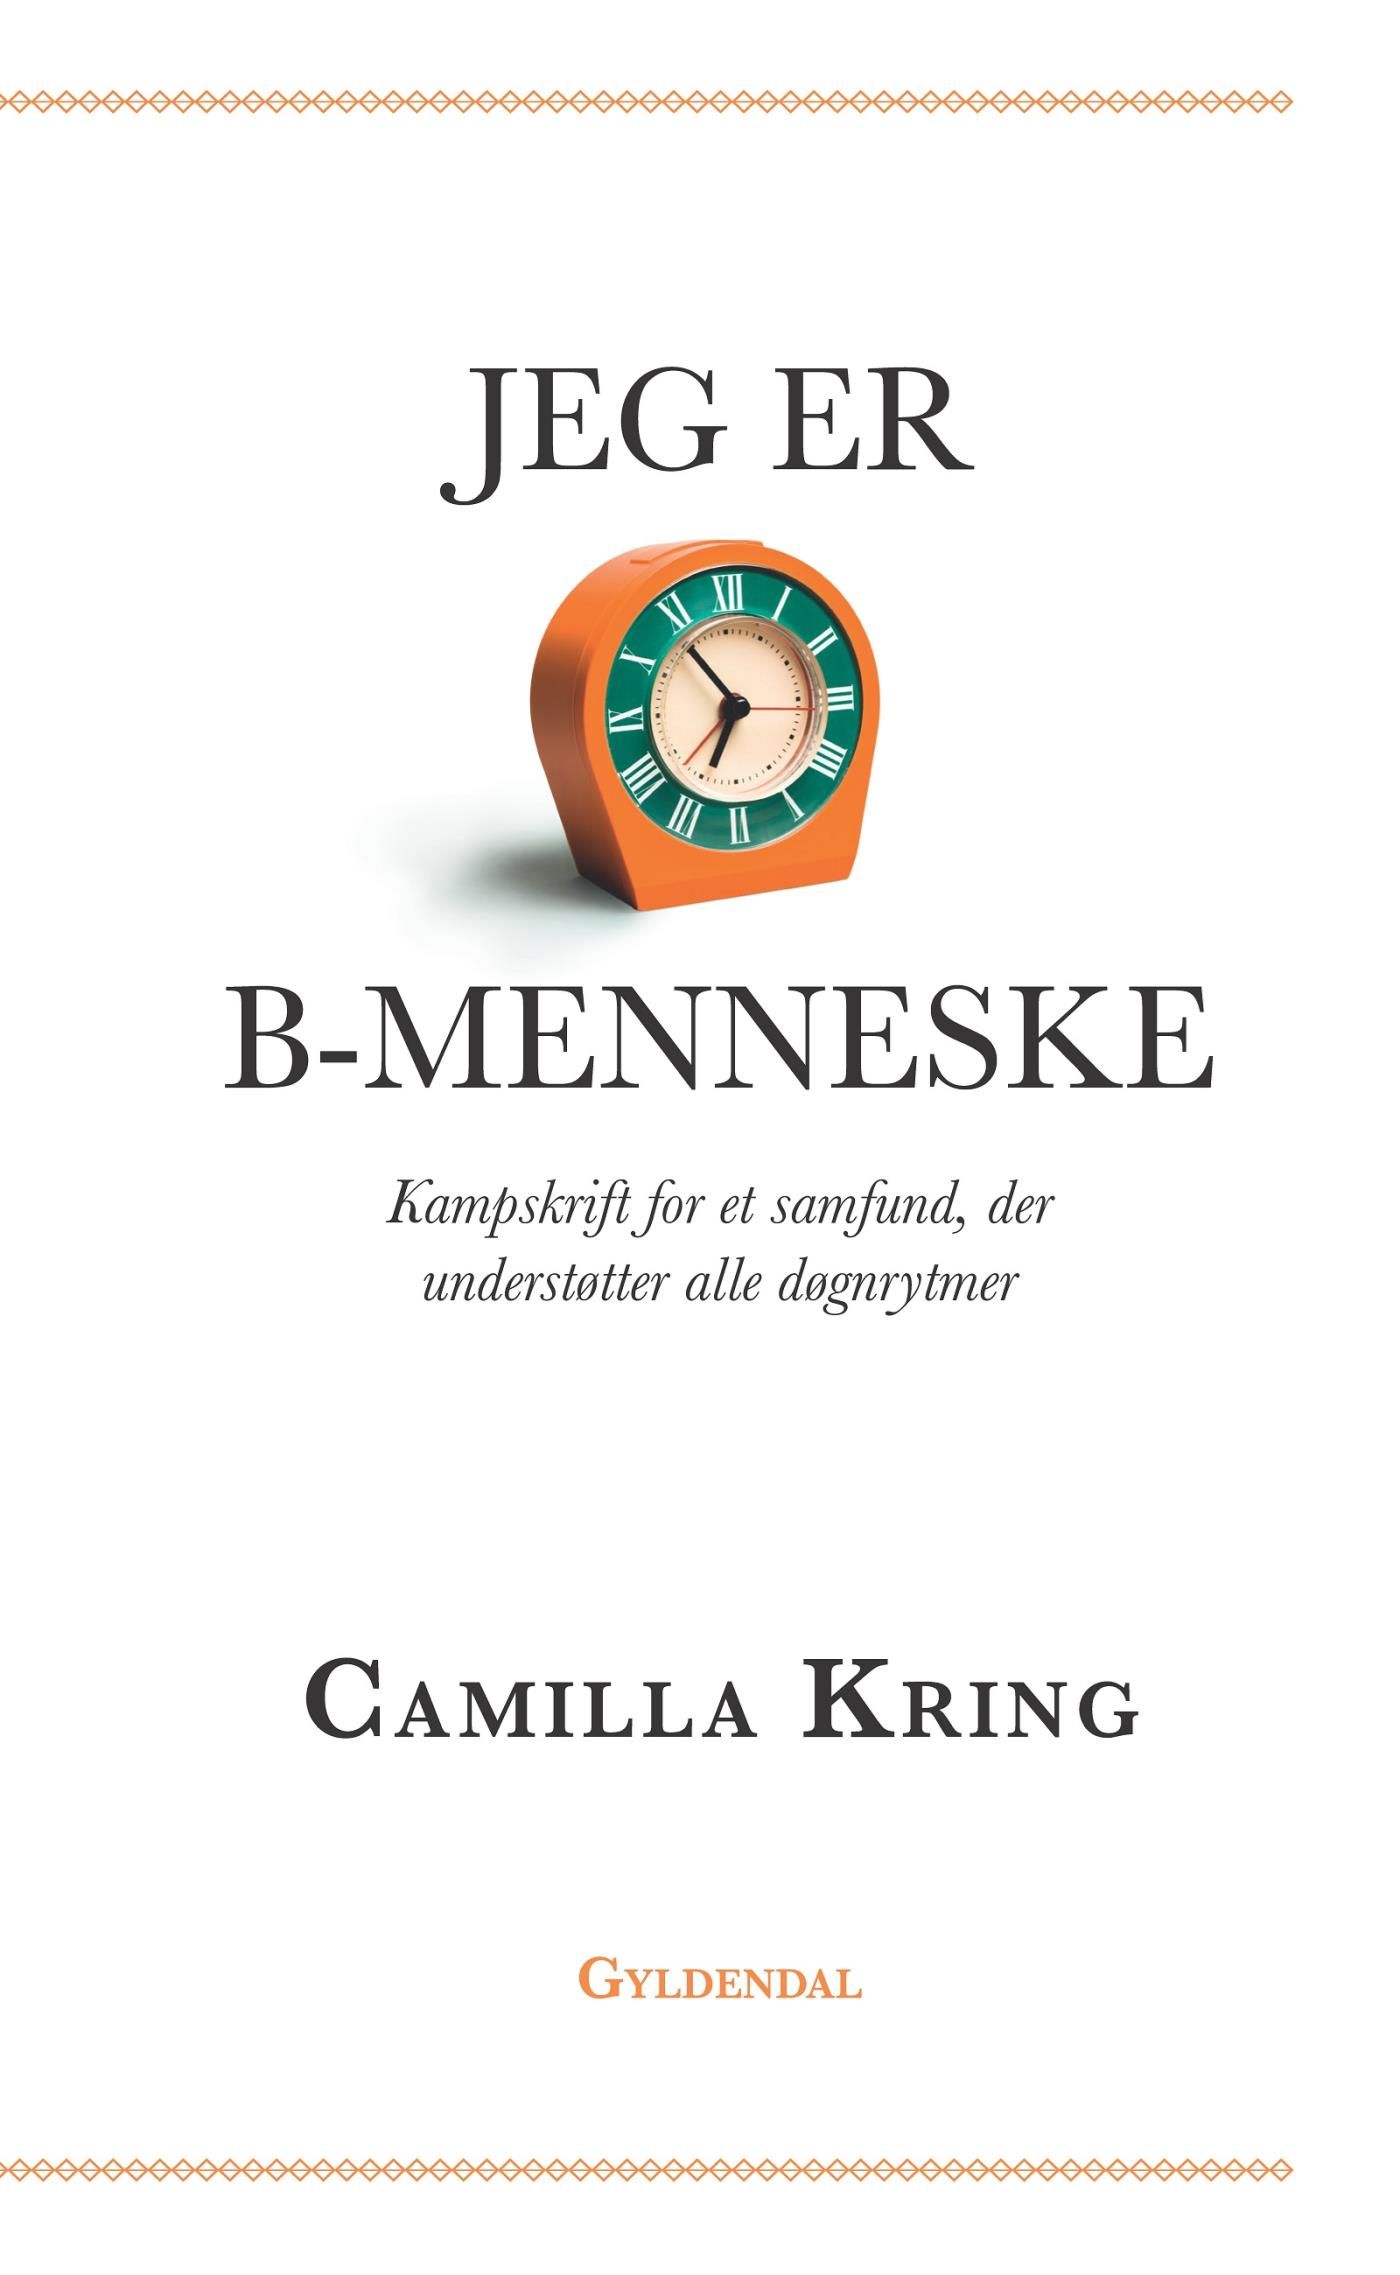 Jeg er B-menneske, eBook by Camilla Kring